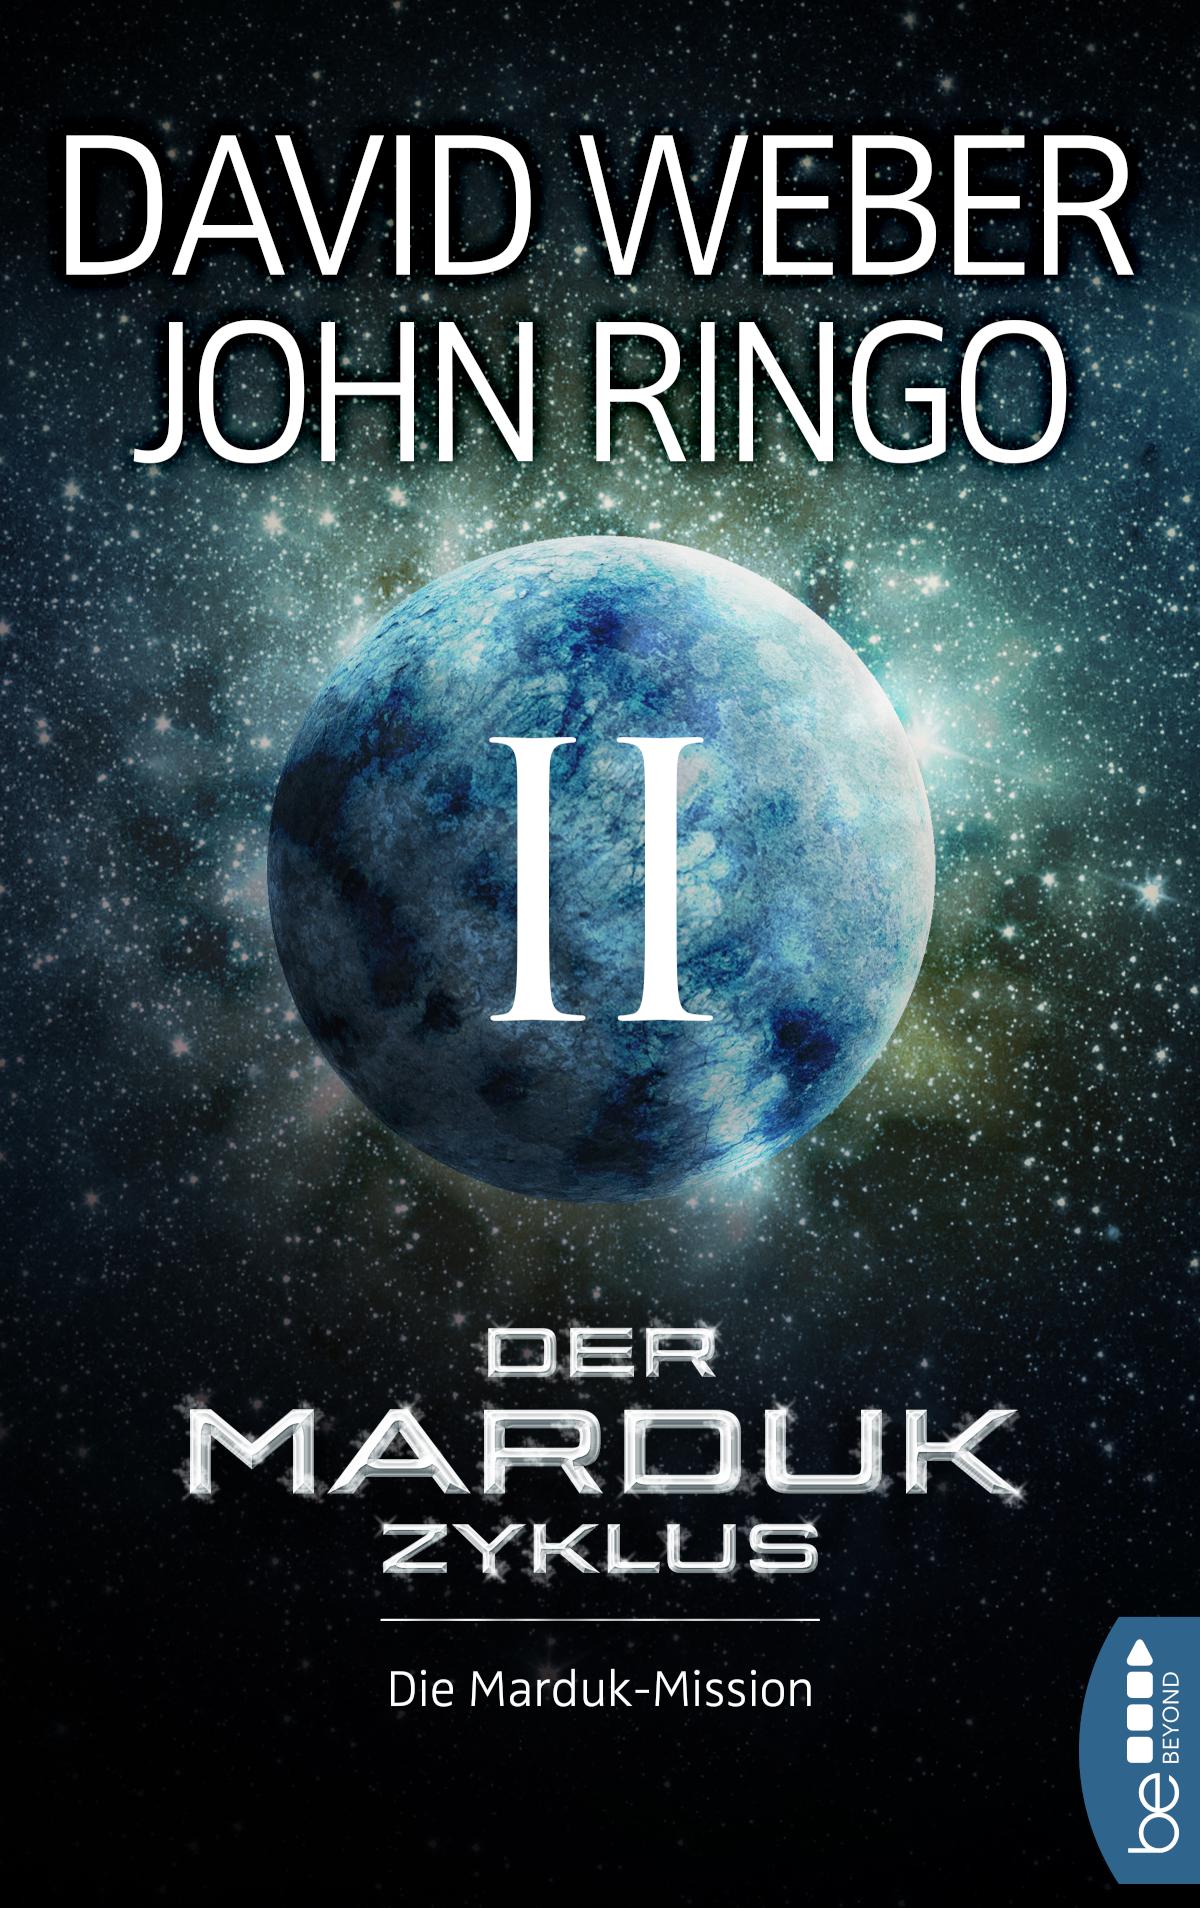 Der Marduk-Zyklus: Die Marduk-Mission Bd. 2